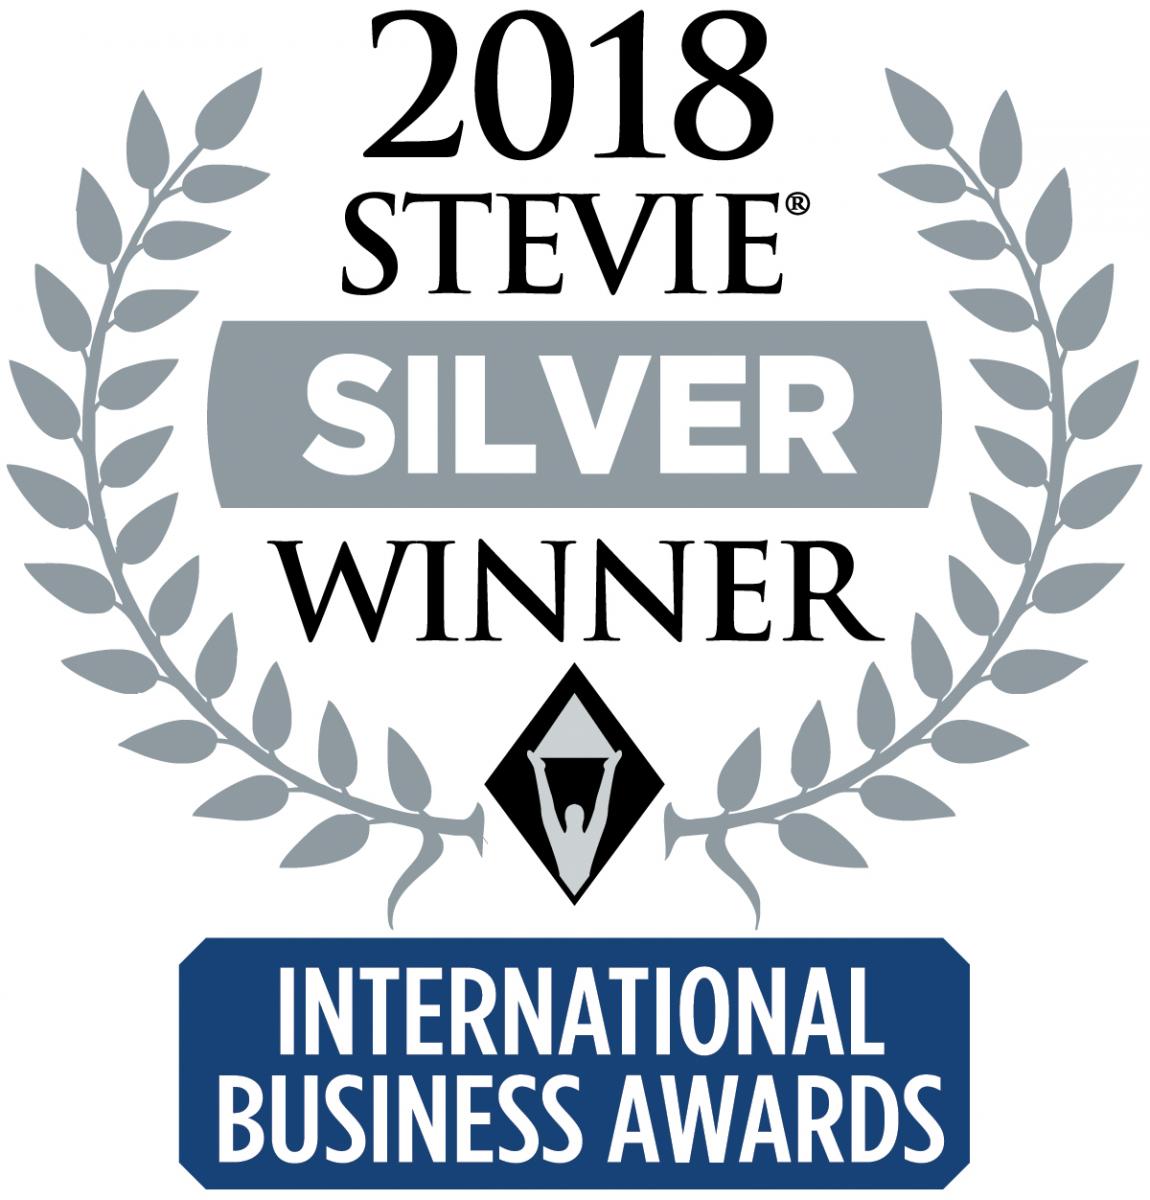 2018 Stevie International Business Awards - Silver Winner